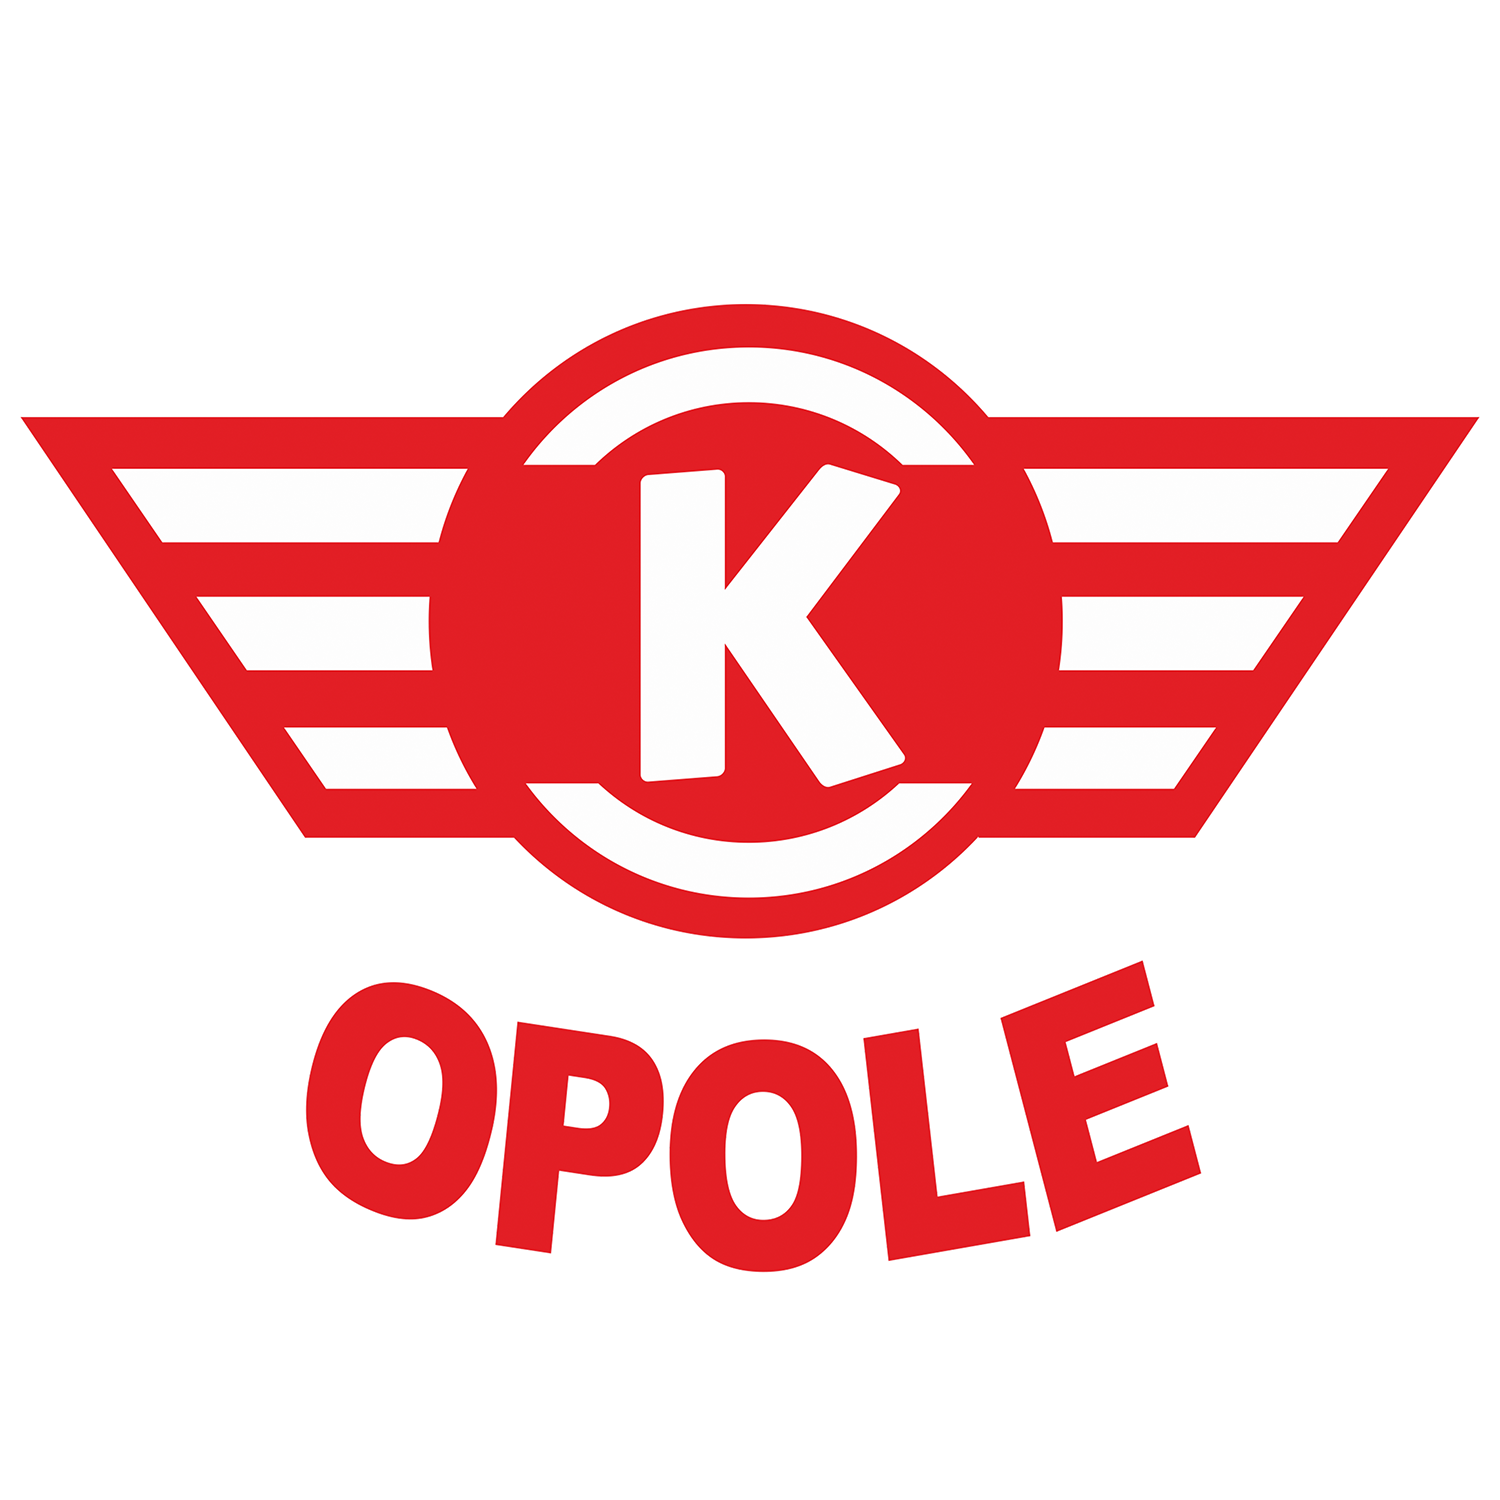 OK Kolejarz Opole Logo